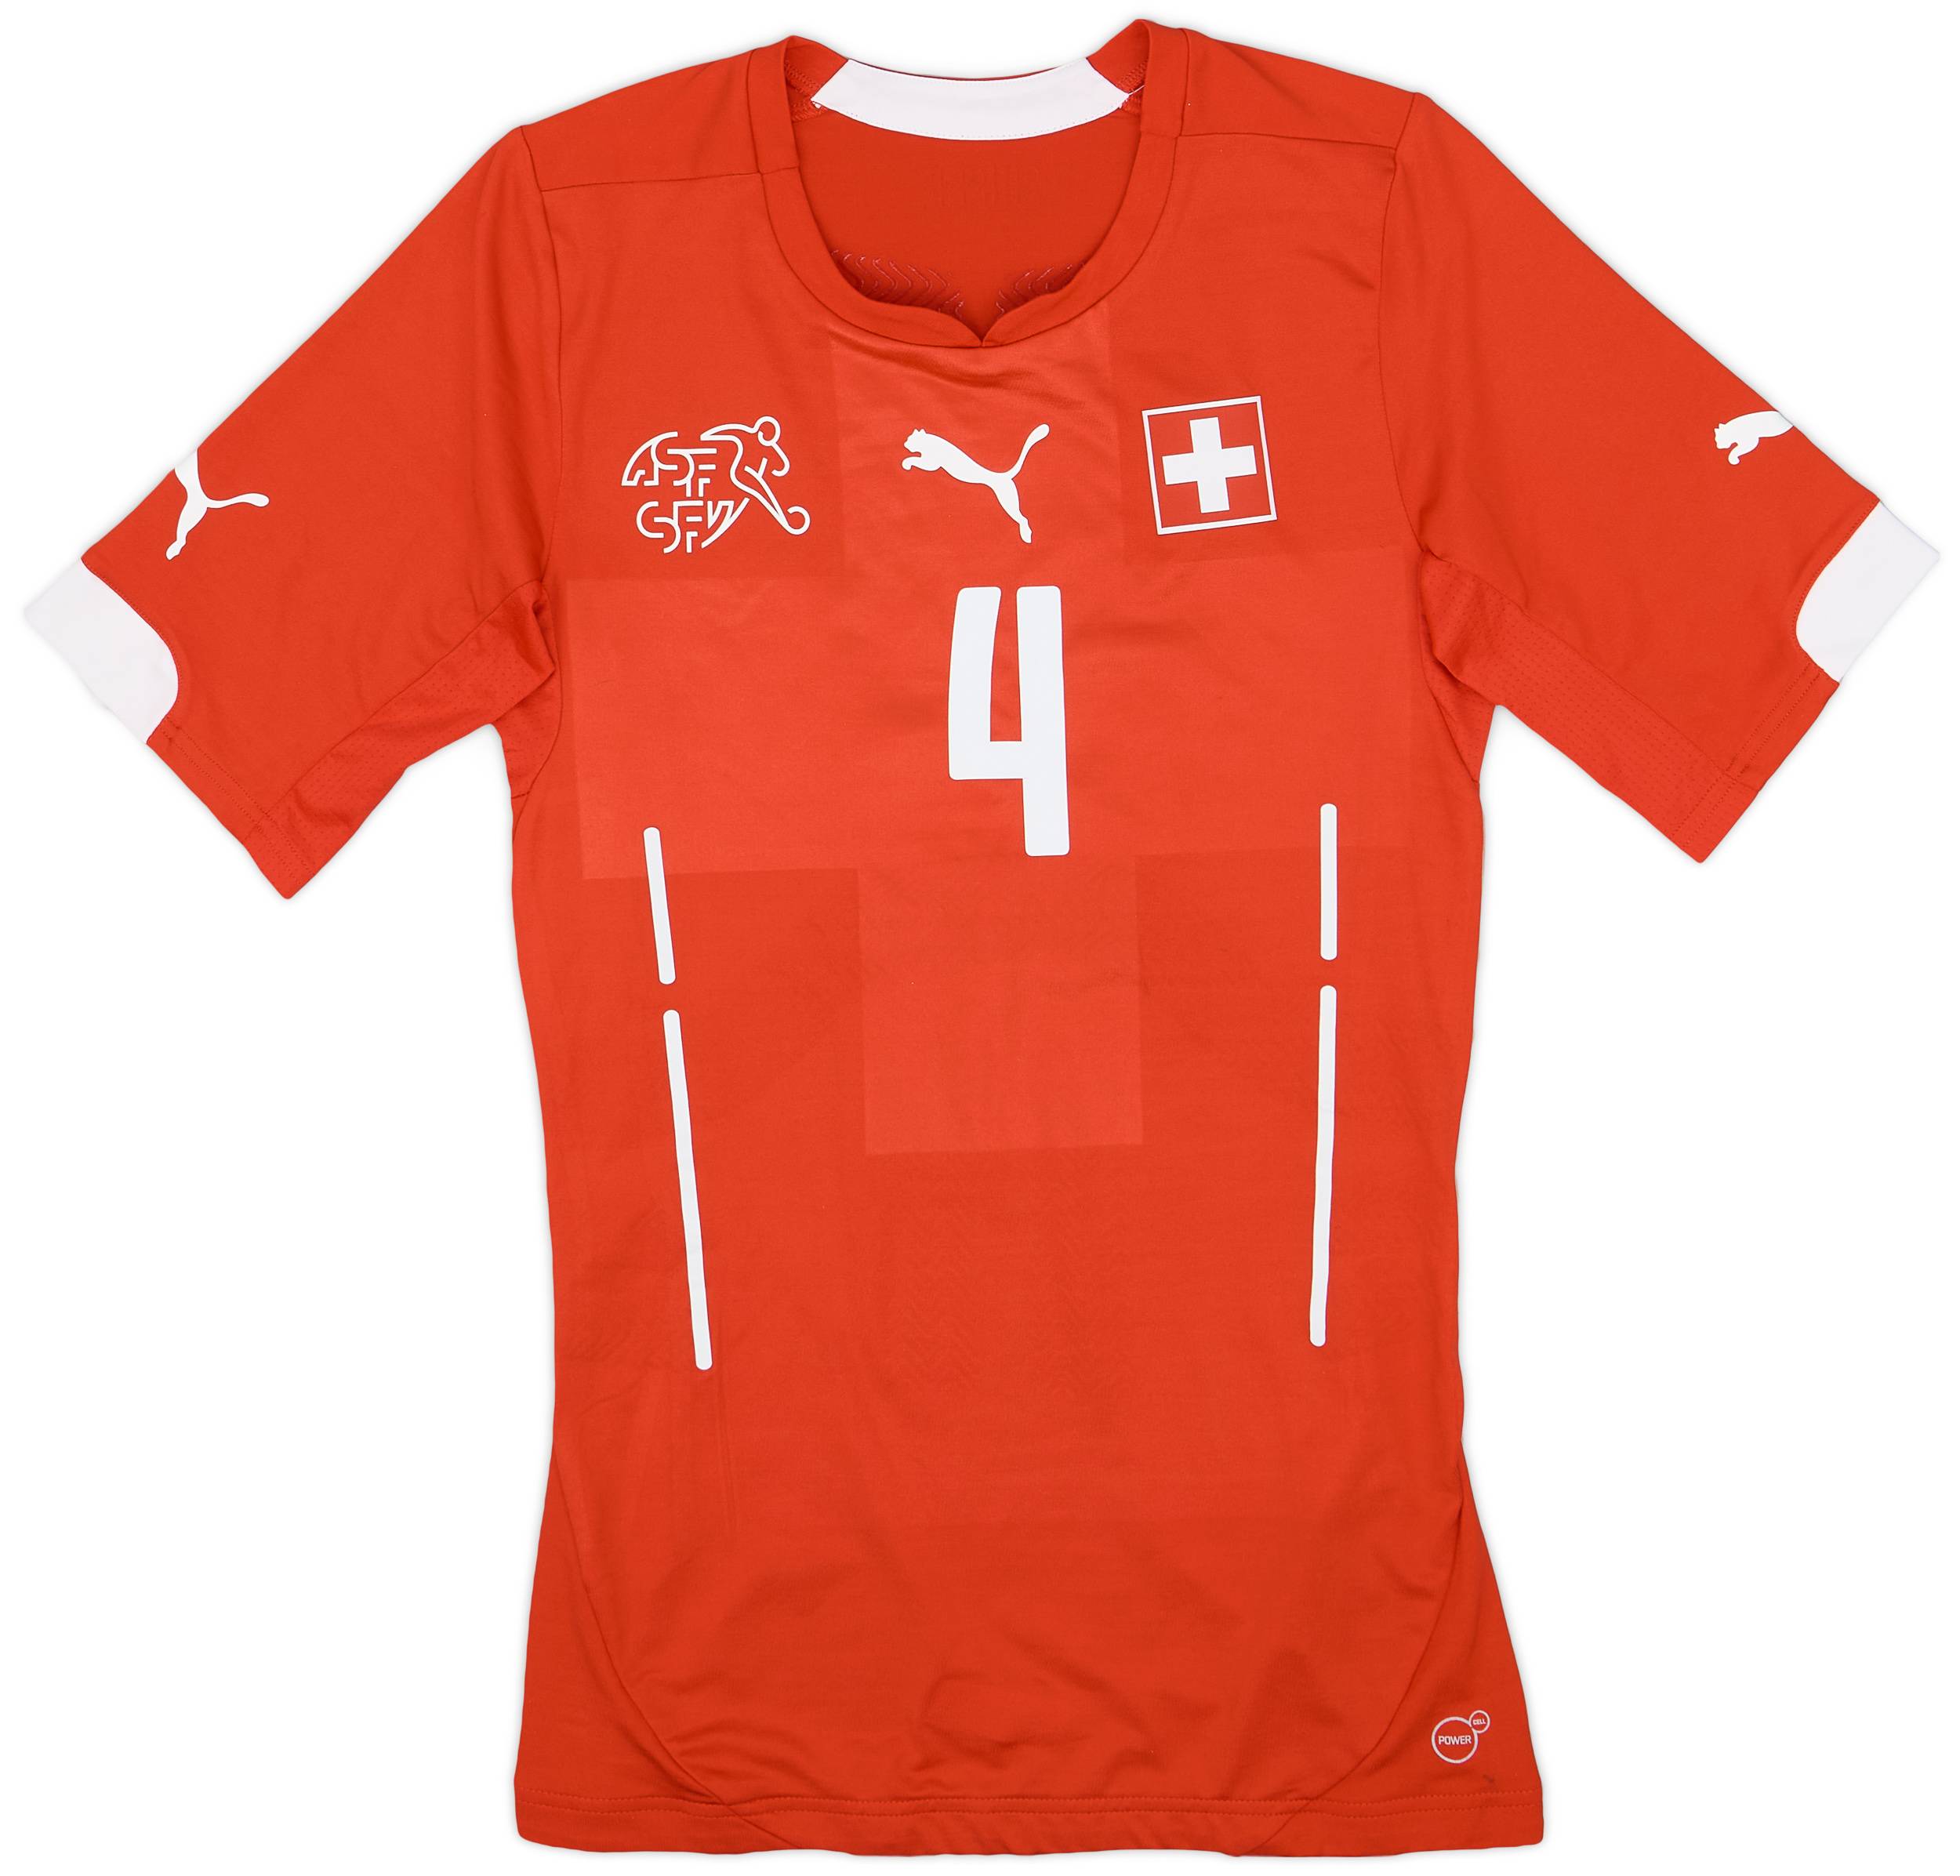 2014-15 Switzerland Player Issue Home Shirt #4 - 7/10 - (M)